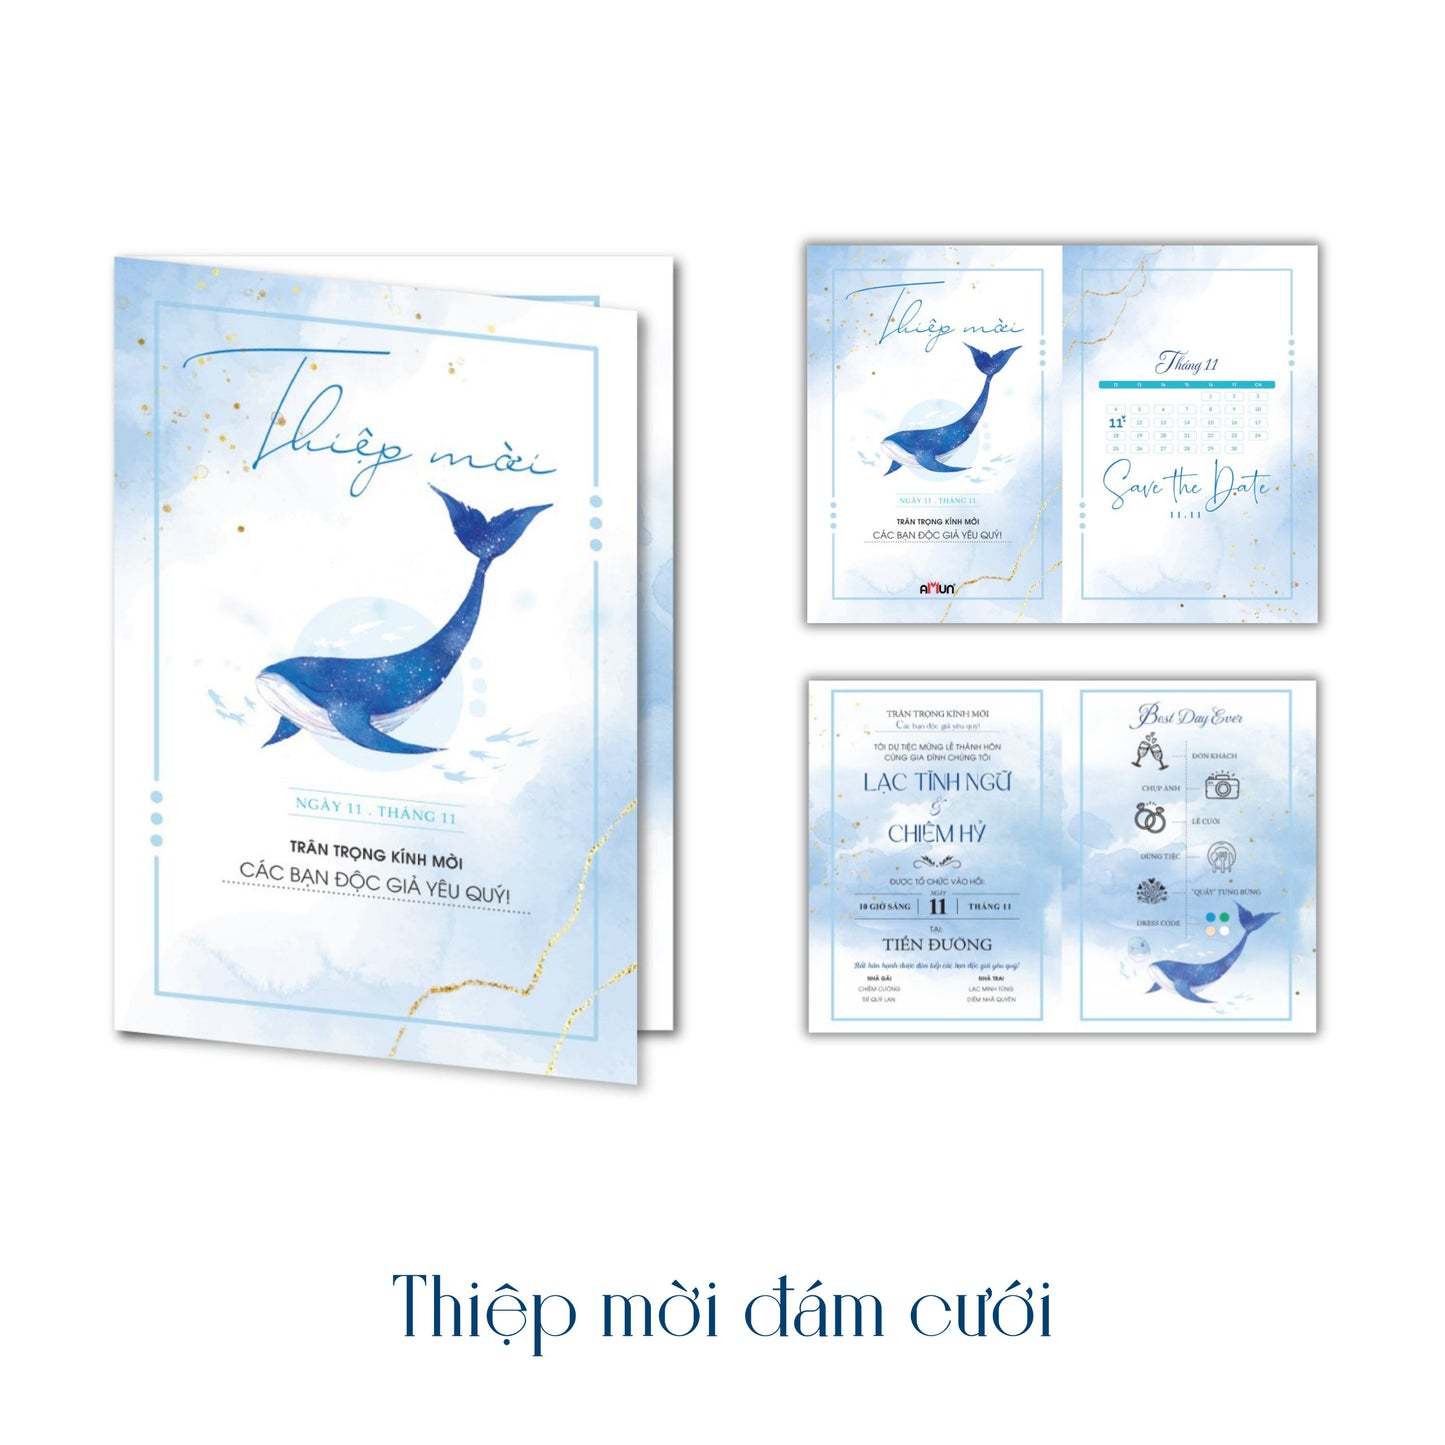 Cá voi cô đơn trọn bộ 3 tập bản đặc biệt tặng kèm thiệp cưới